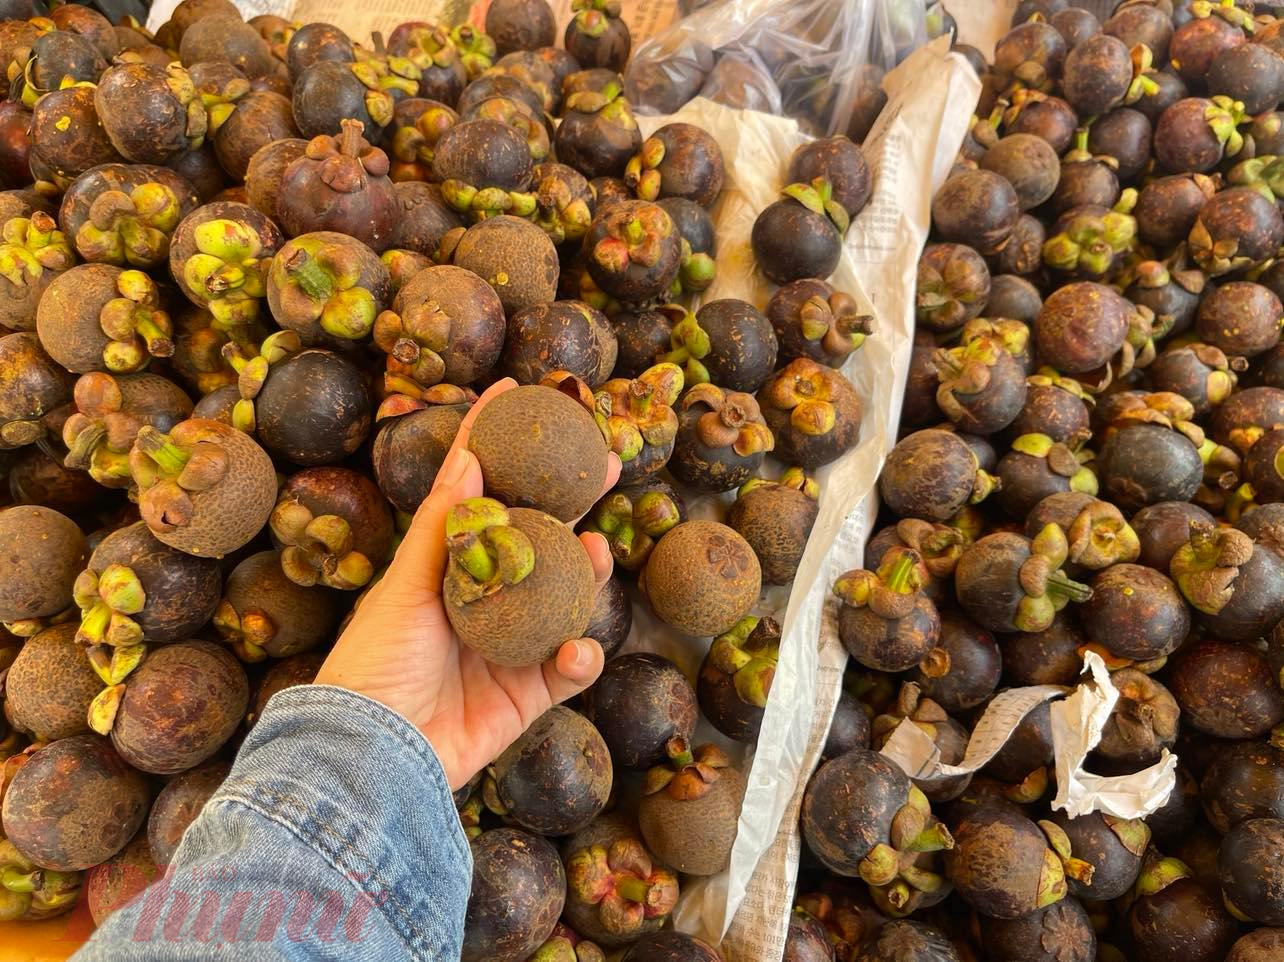 Măng cụt Thái Lan trái nhỏ giá 60.000 - 80.000 đồng/kg, mức giá này cao gấp 3 - 4 lần so với cùng kỳ năm trước - Ảnh: Nguyễn Cẩm